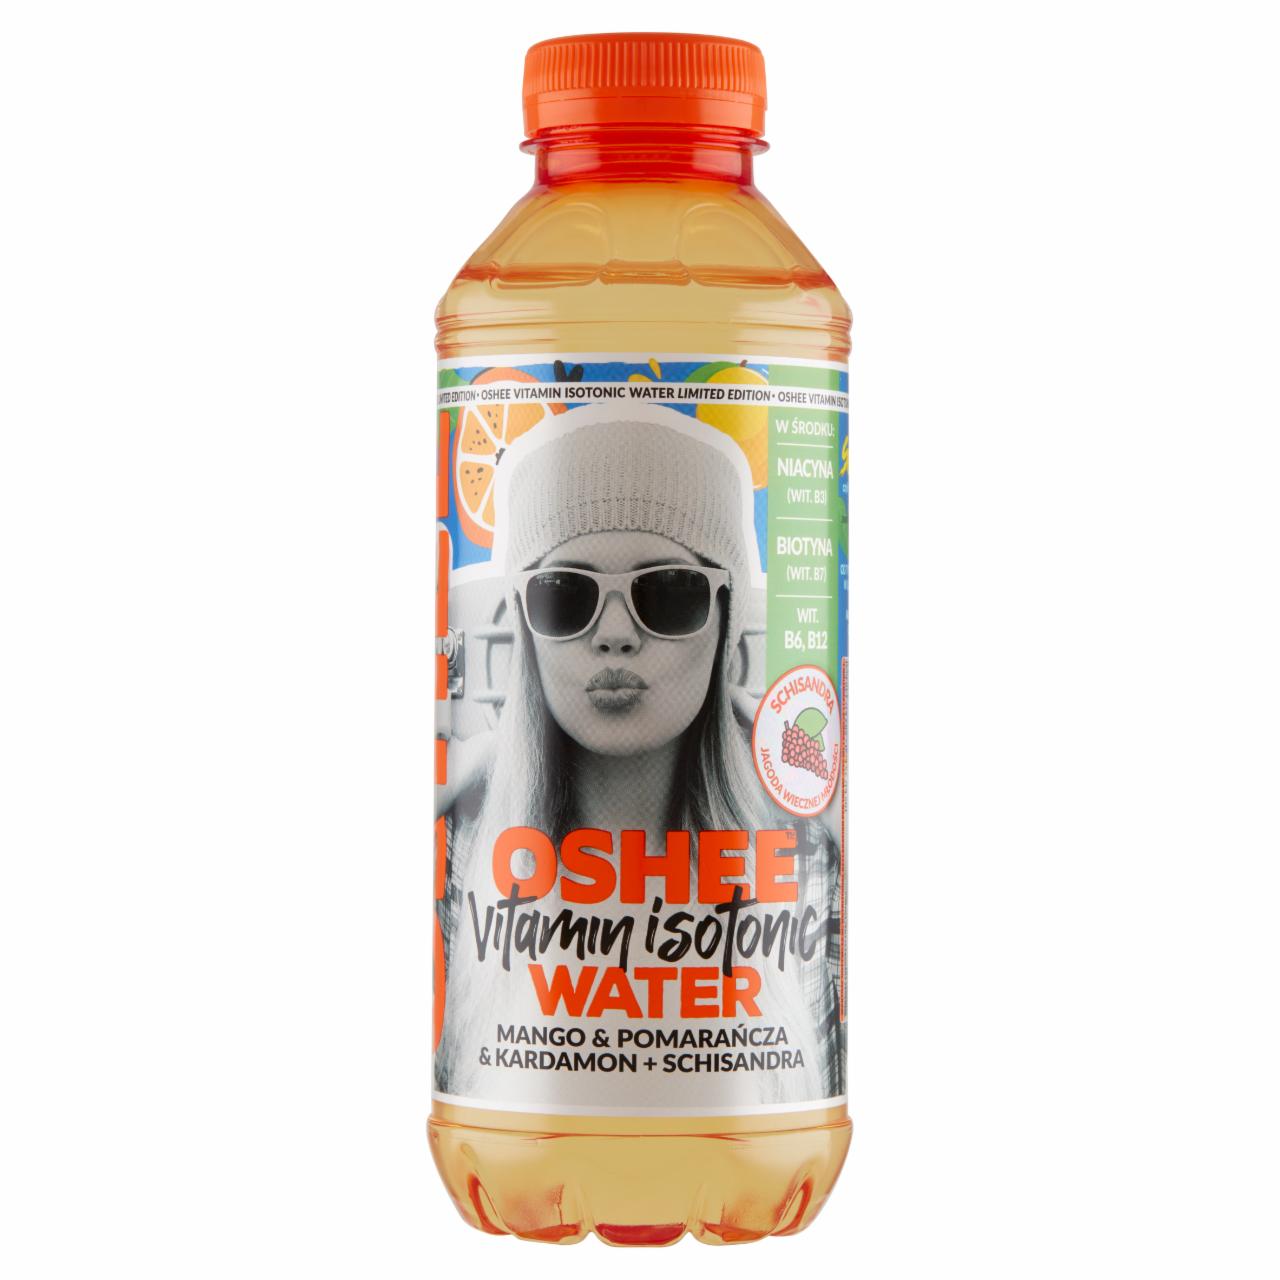 Zdjęcia - Oshee Vitamin Isotonic Water Napój niegazowany mango & pomarańcza & kardamon + schisandra 555 ml